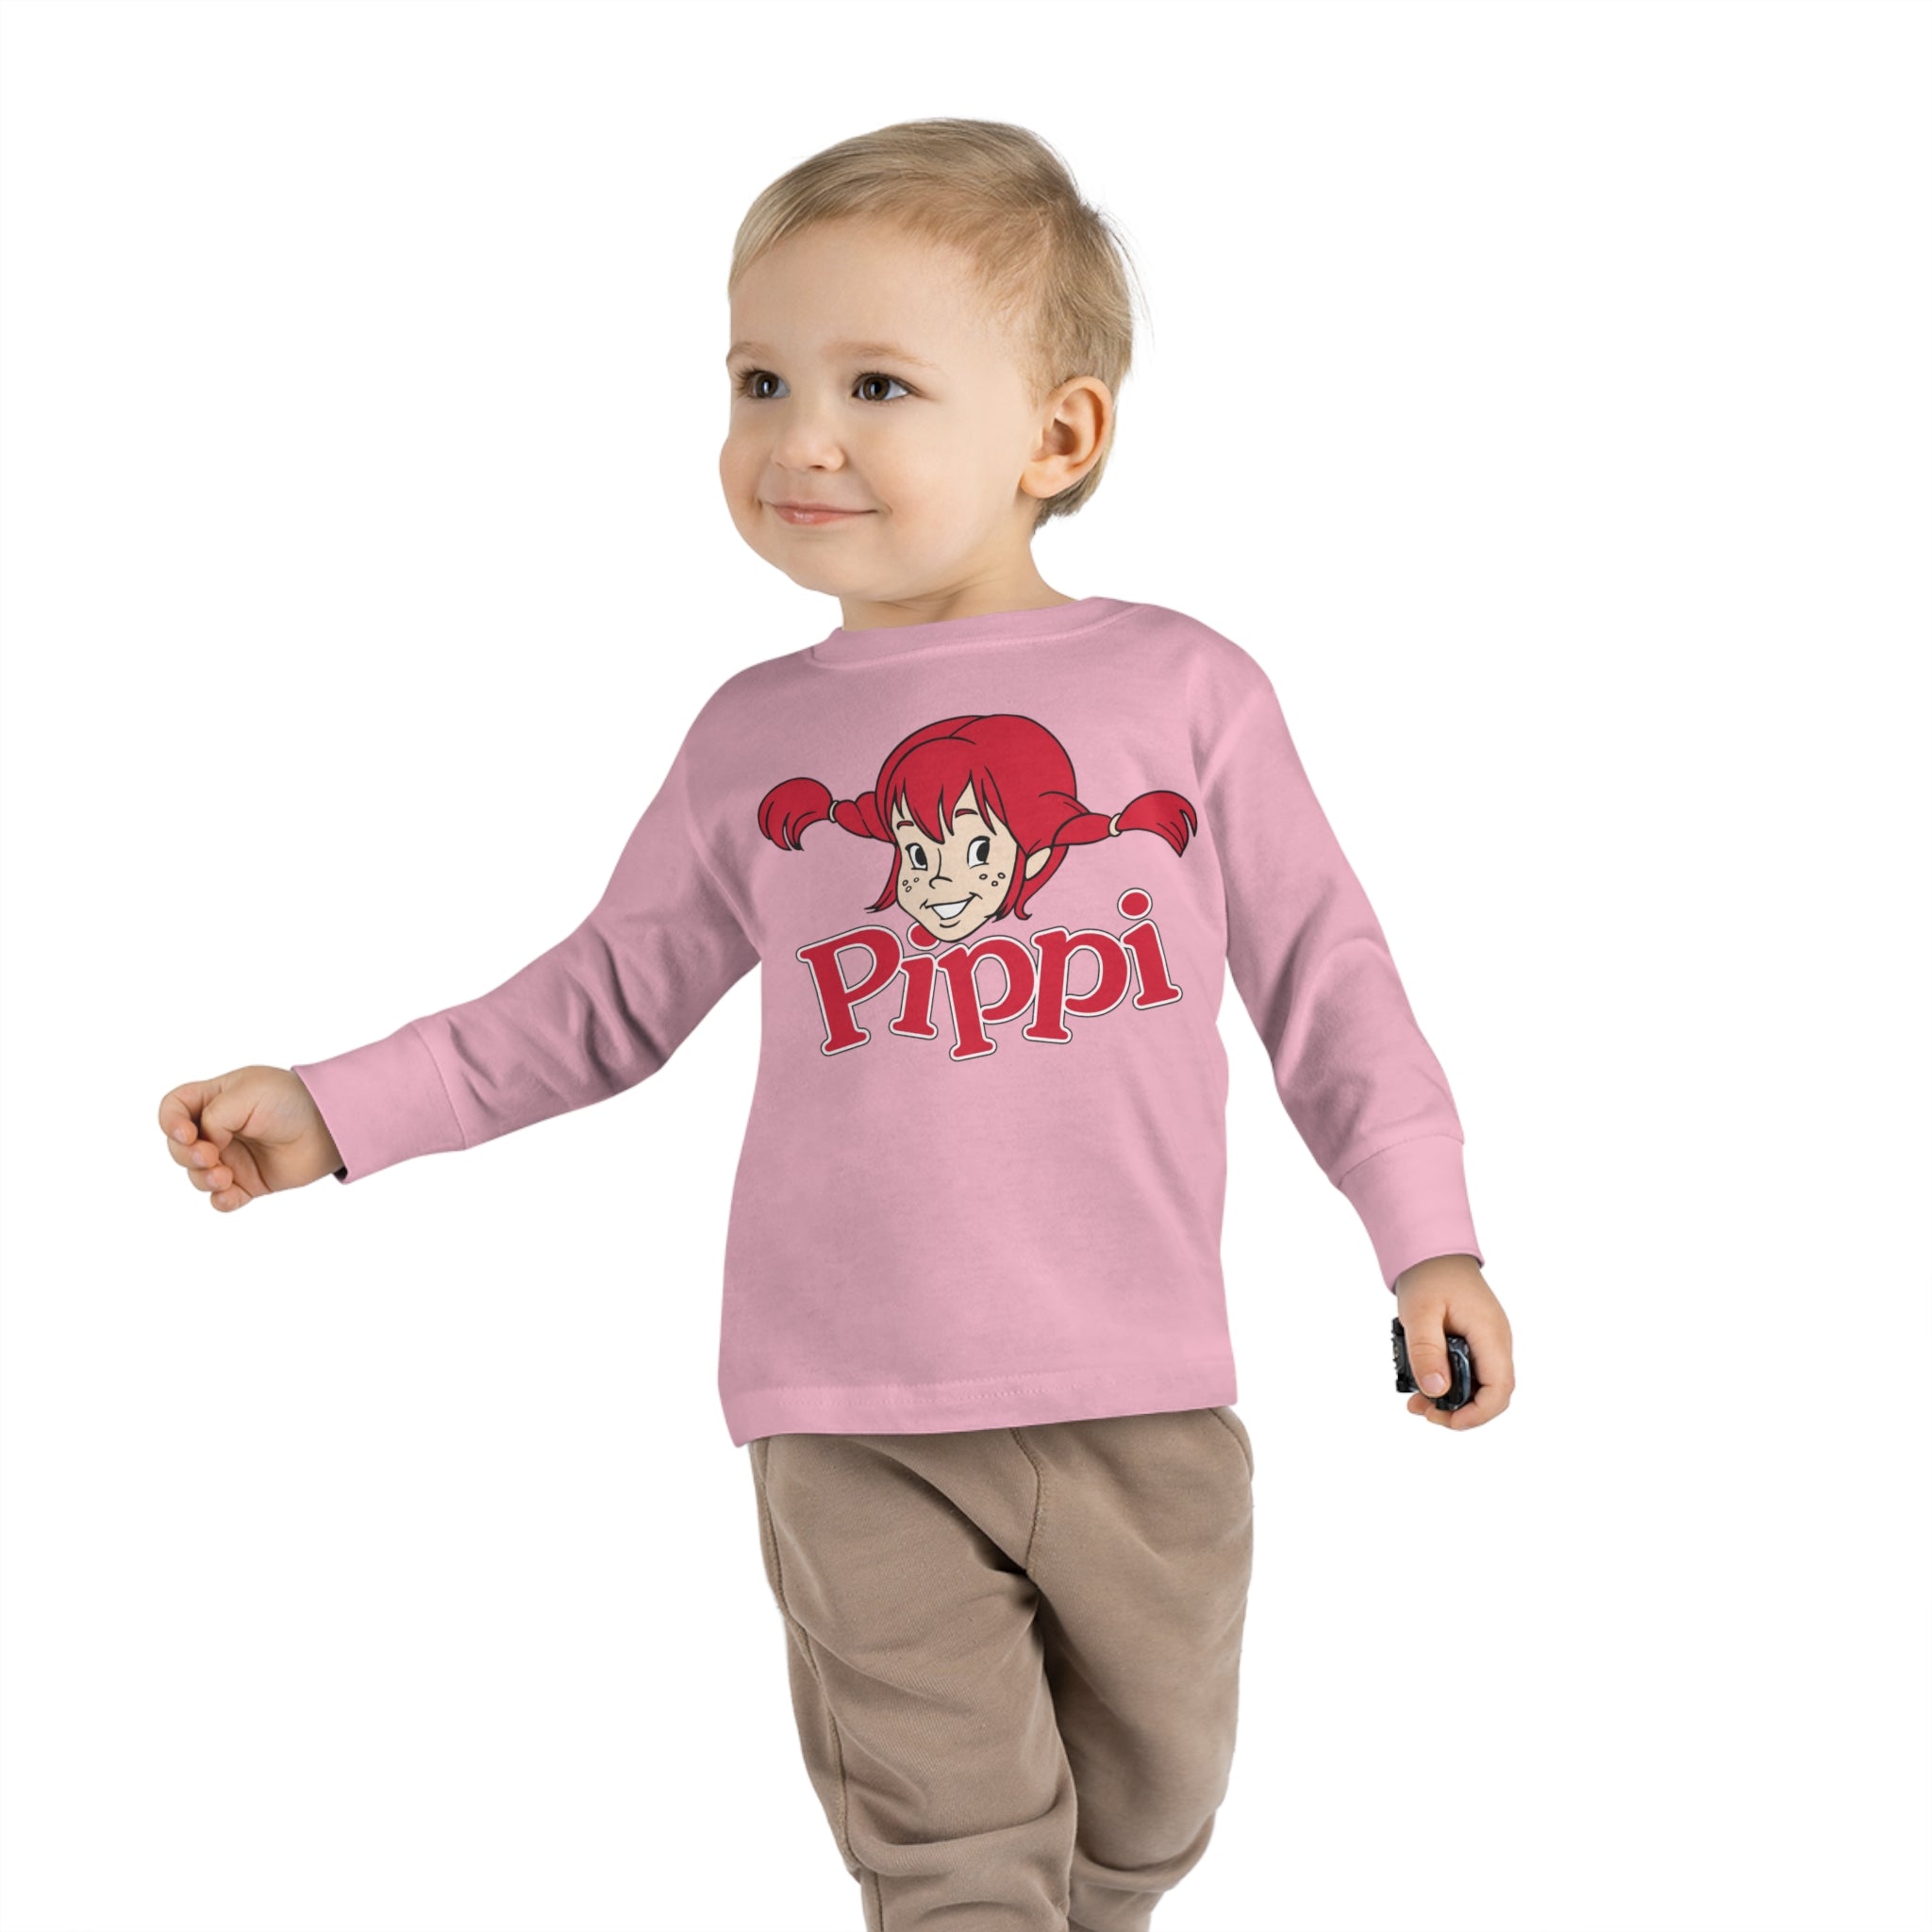 Pippi Longstocking Toddler Long Sleeve Tee